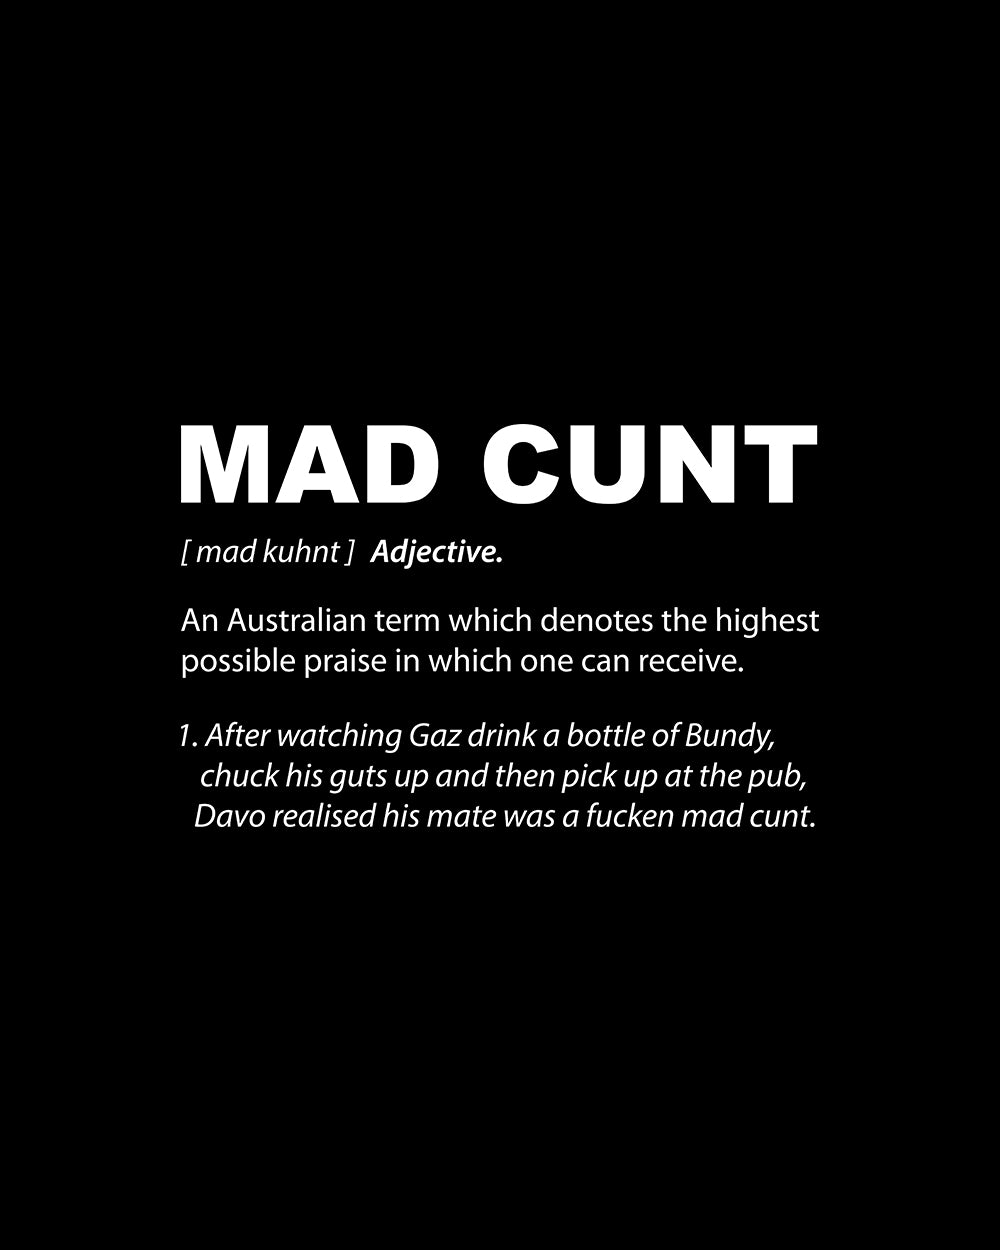 Mad Cunt Tank Australia Online #colour_black